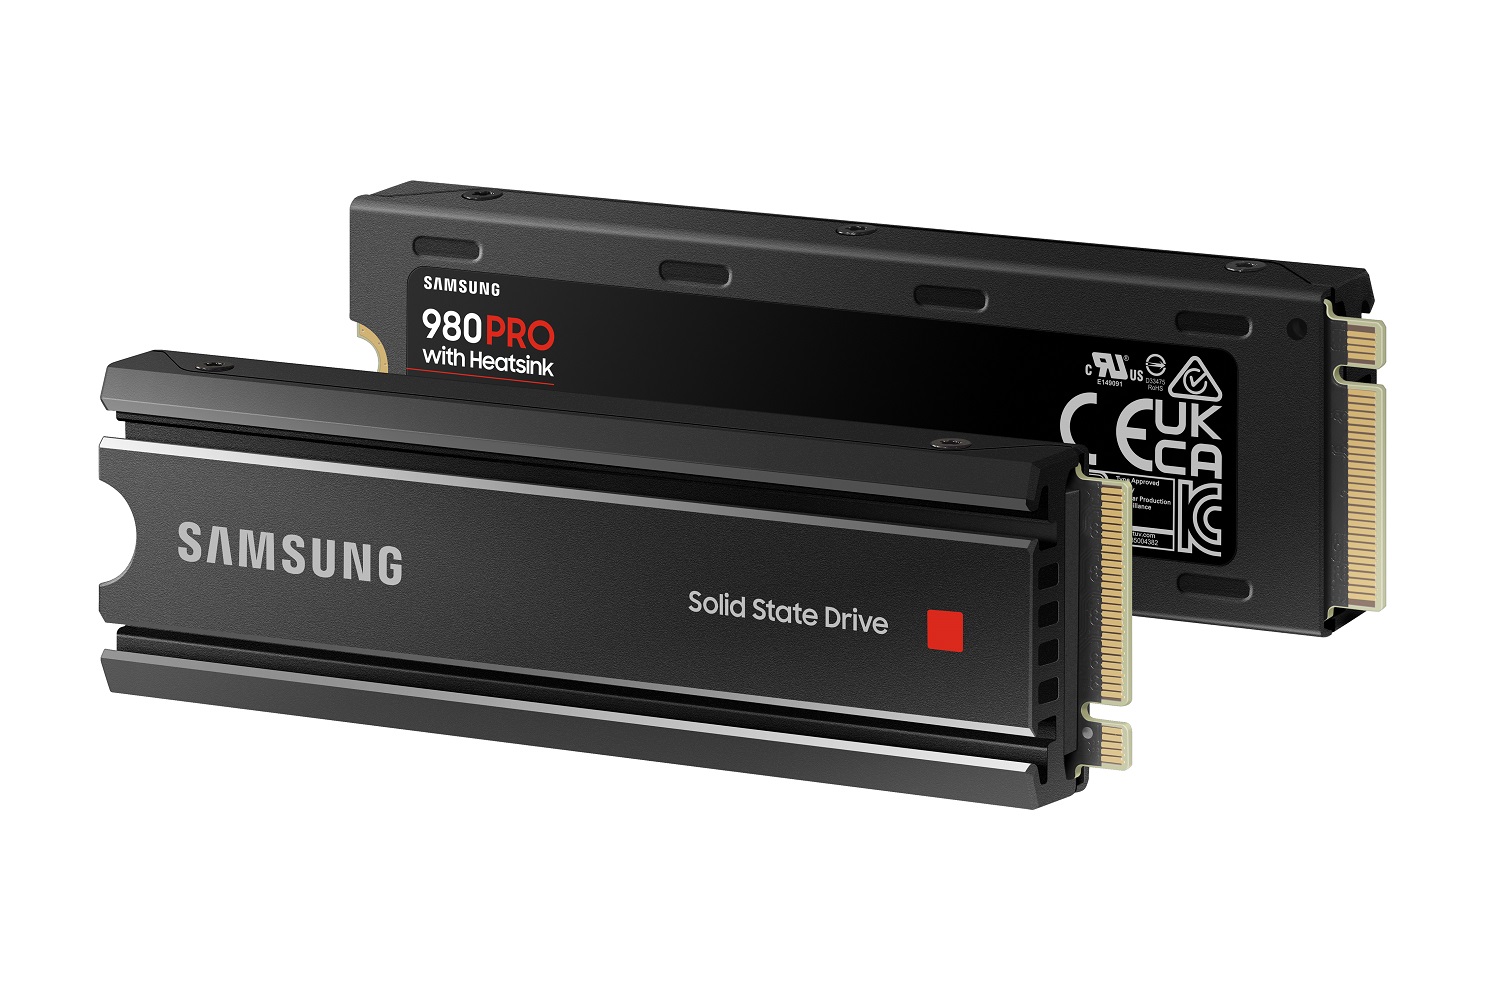 Samsung 980 PRO Heatsink SSD NVMe